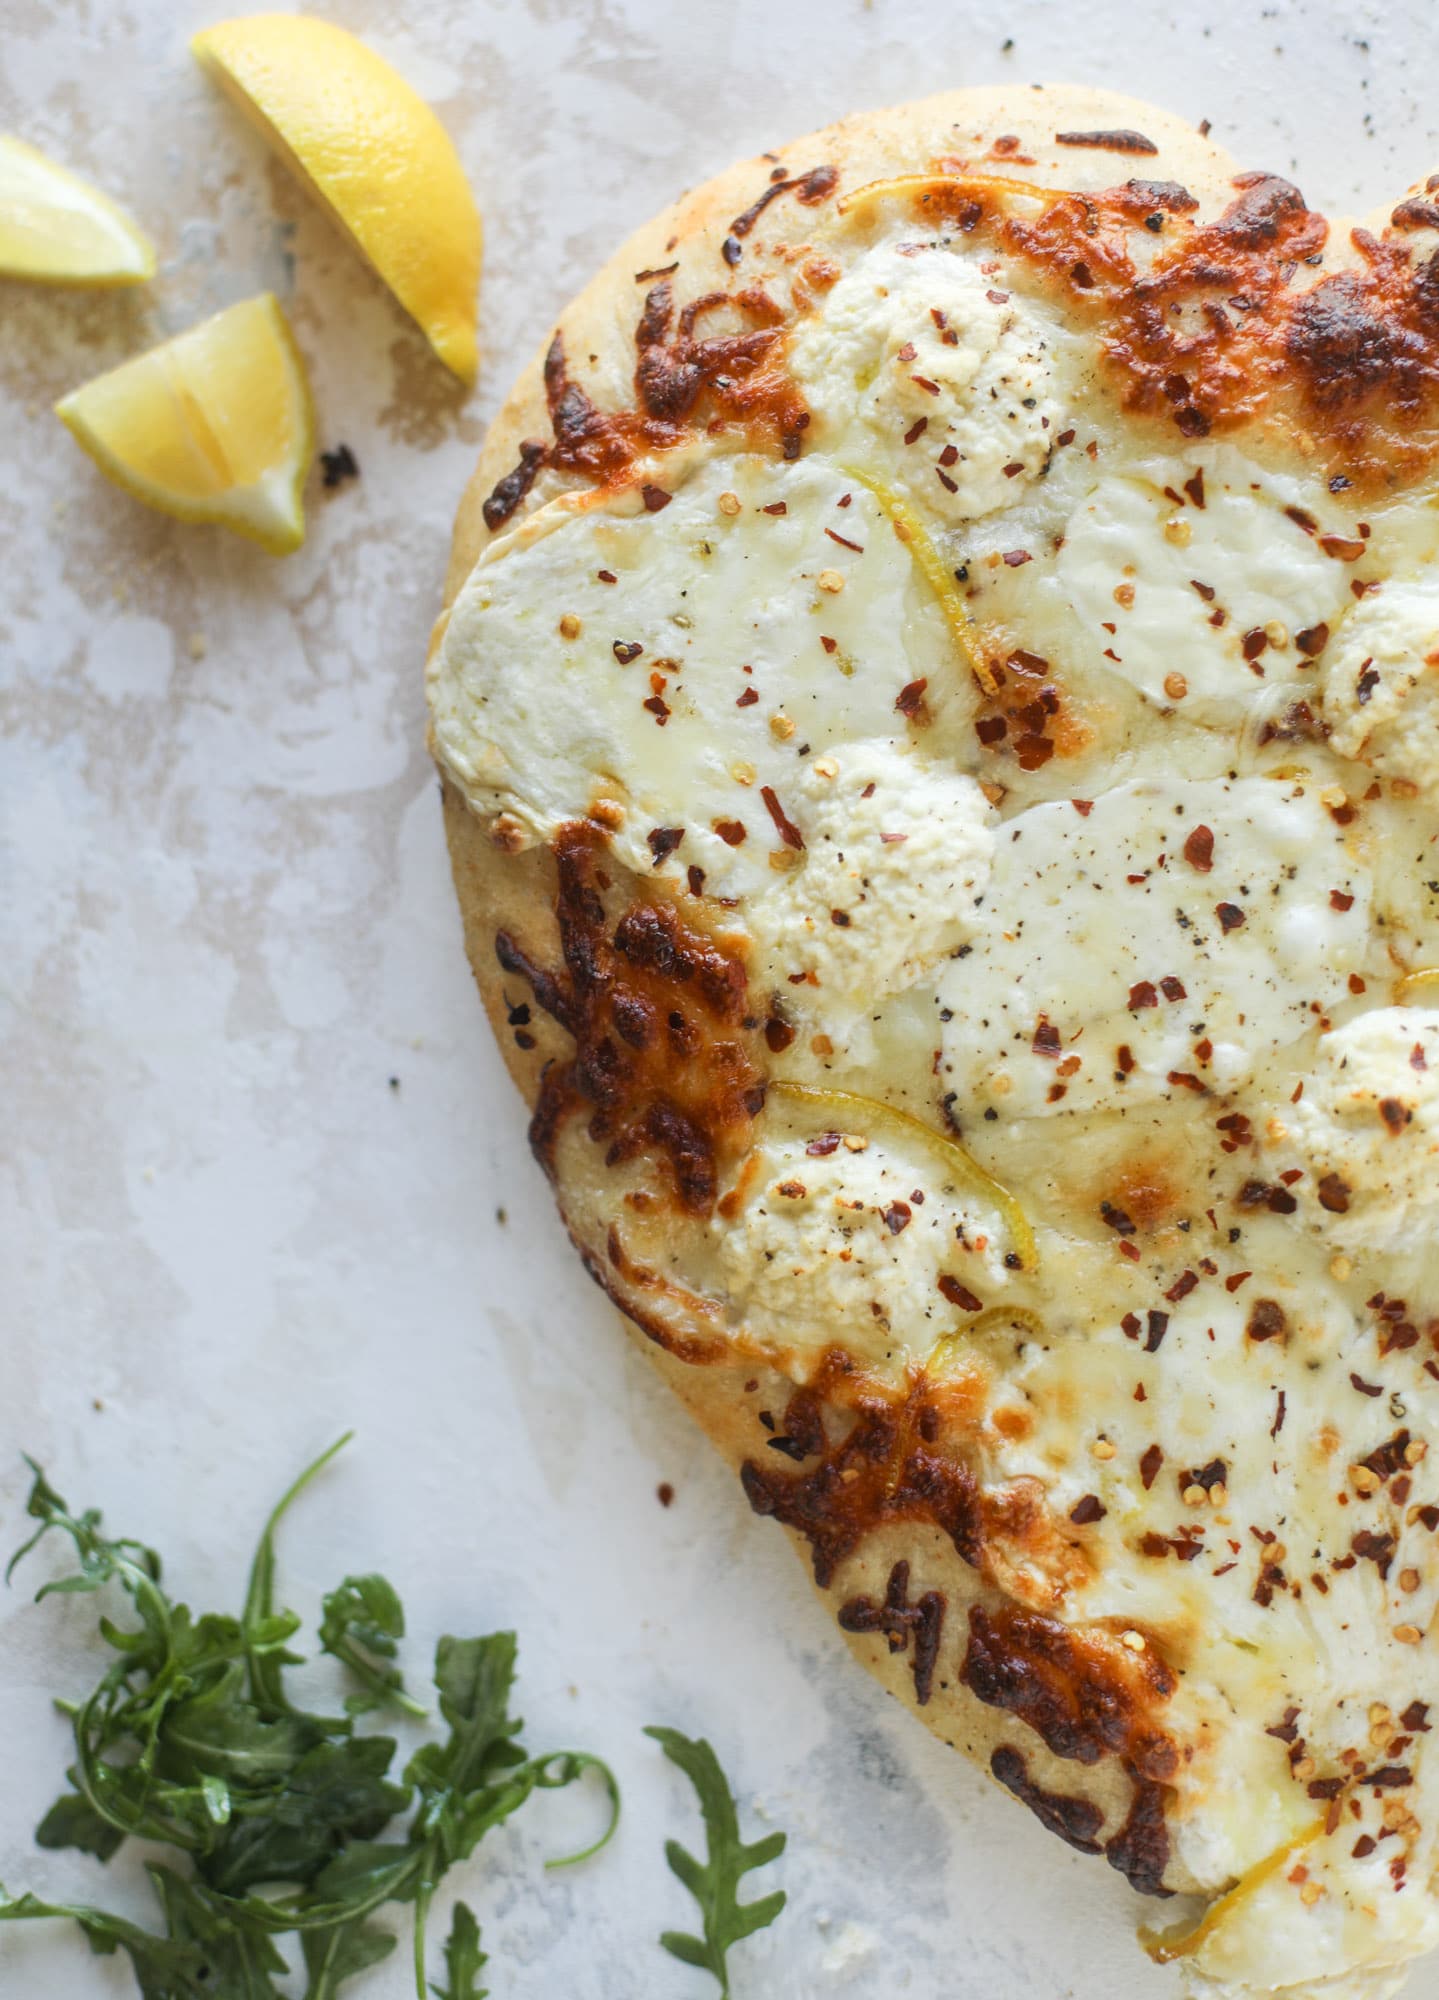 Best White Pizza Recipe - Our Favorite White Pizza Recipe